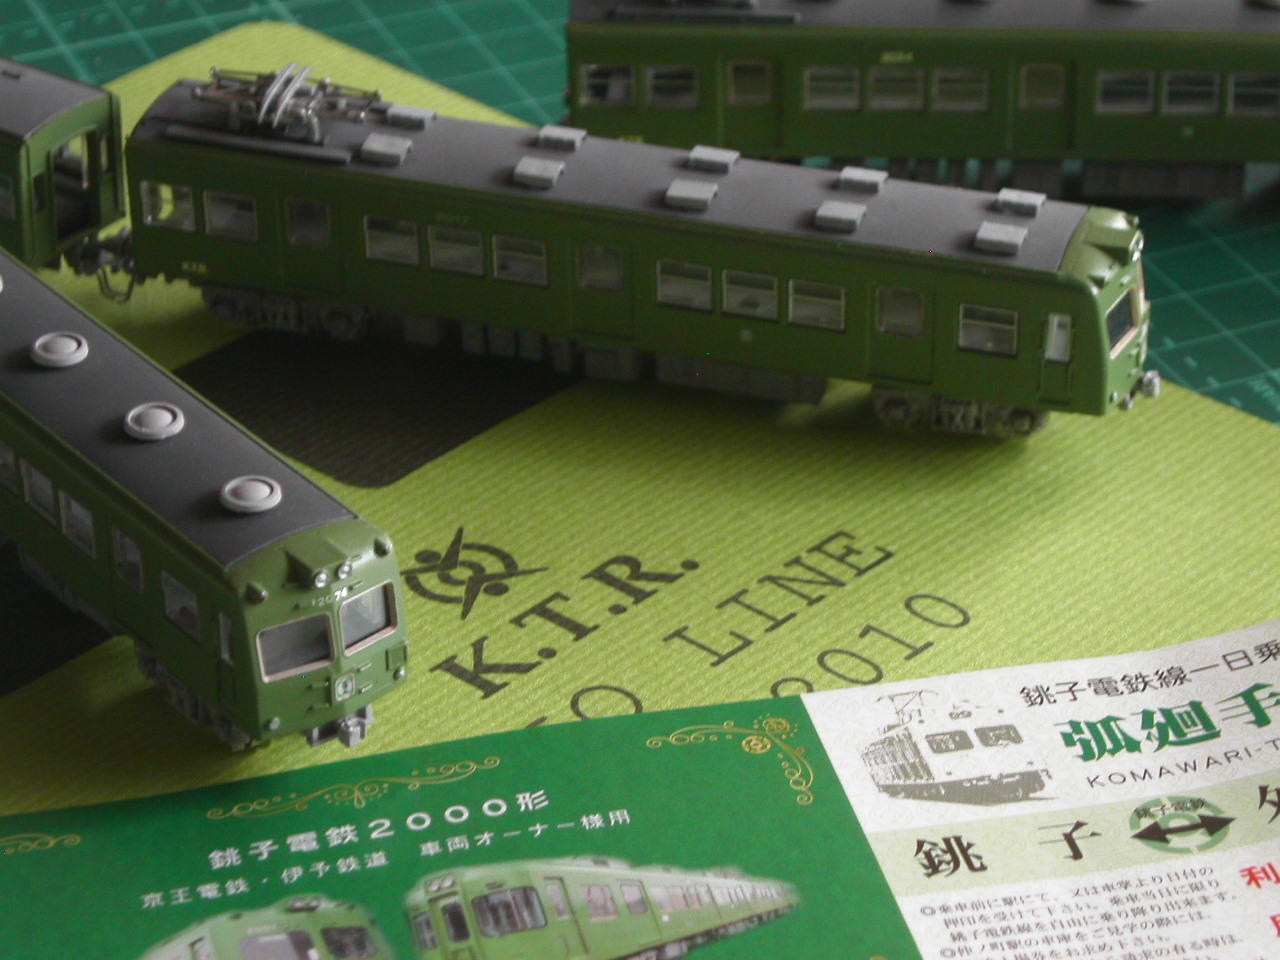 回想的鉄道模型：京王帝都電鉄 ２０１０系: 銀路画報 GINRO PICTORIAL blog